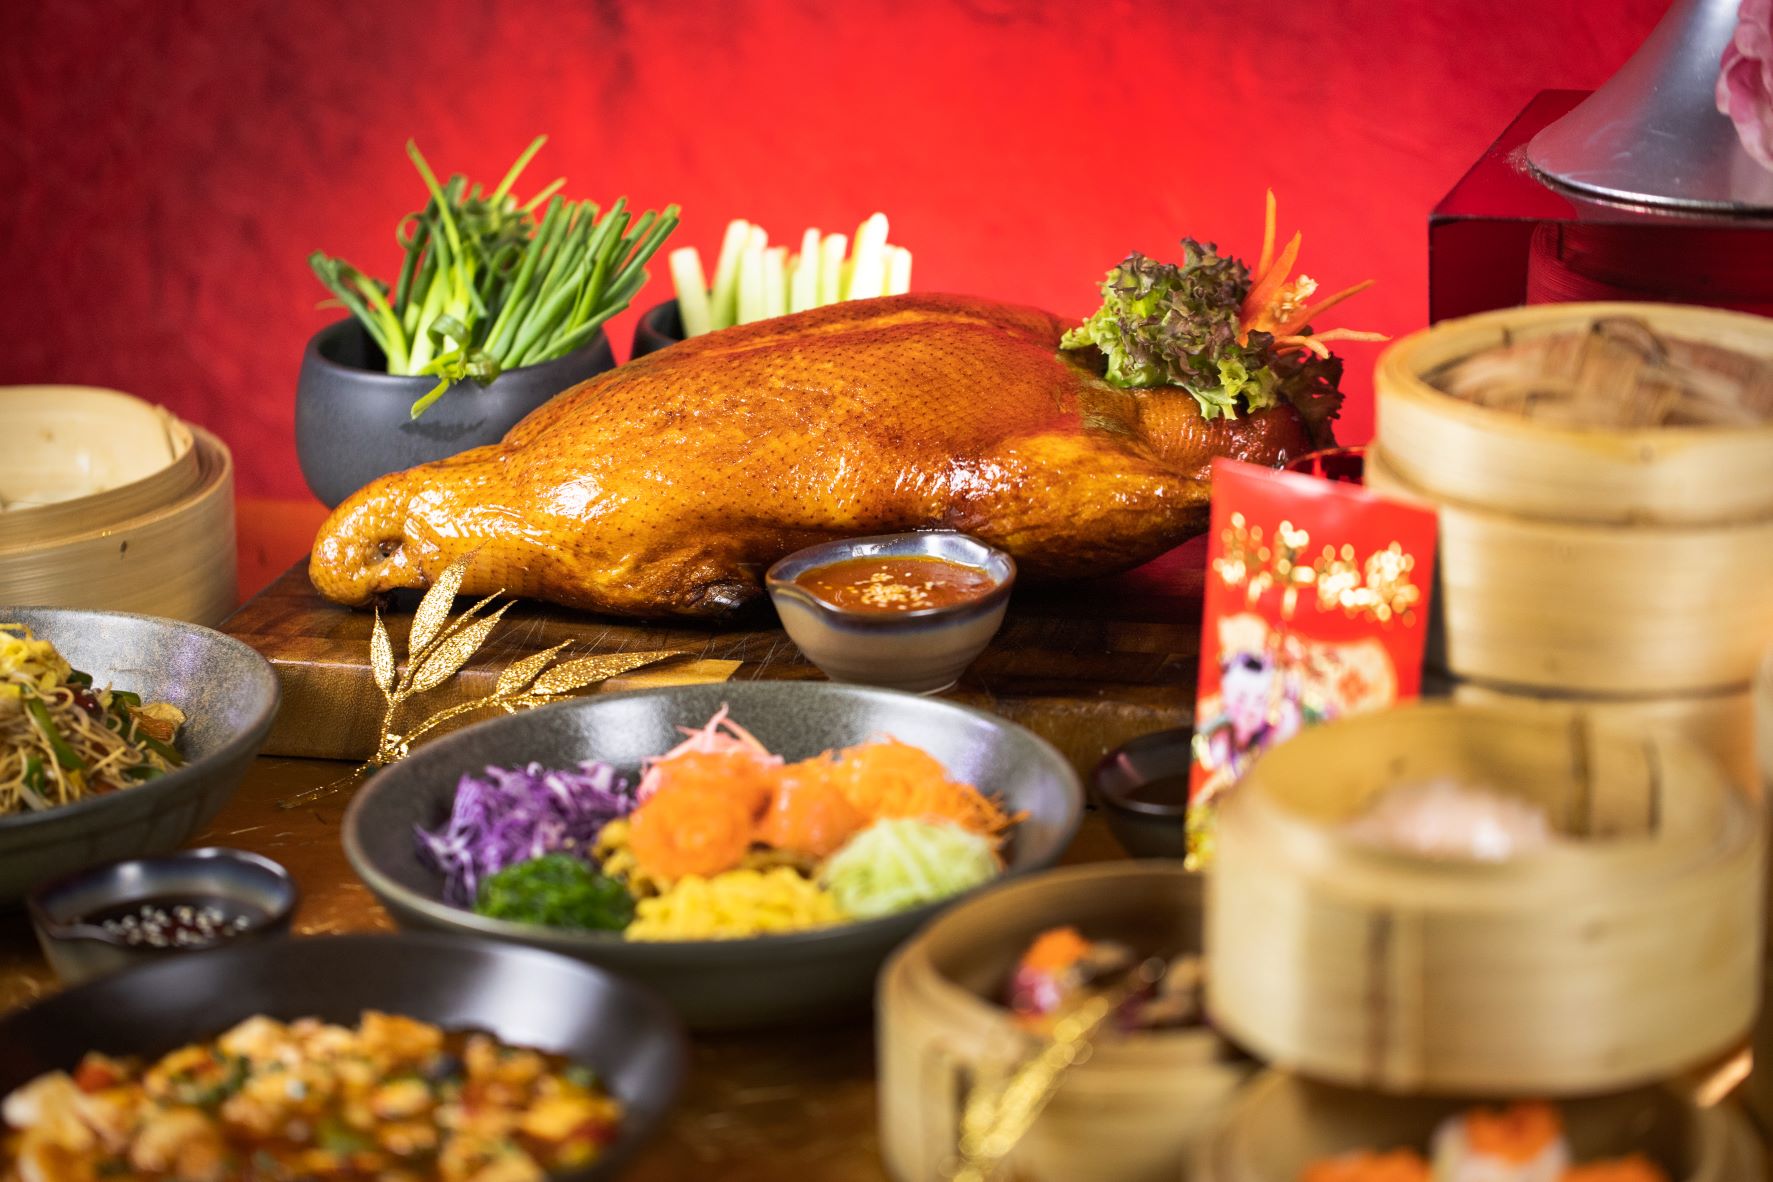 เฉลิมฉลองเทศกาลตรุษจีนปีขาล ที่ห้องอาหารสไปซ์ แอนด์ บาร์เลย์ ณ อนันตรา ริเวอร์ไซด์ กรุงเทพฯ รีสอร์ท